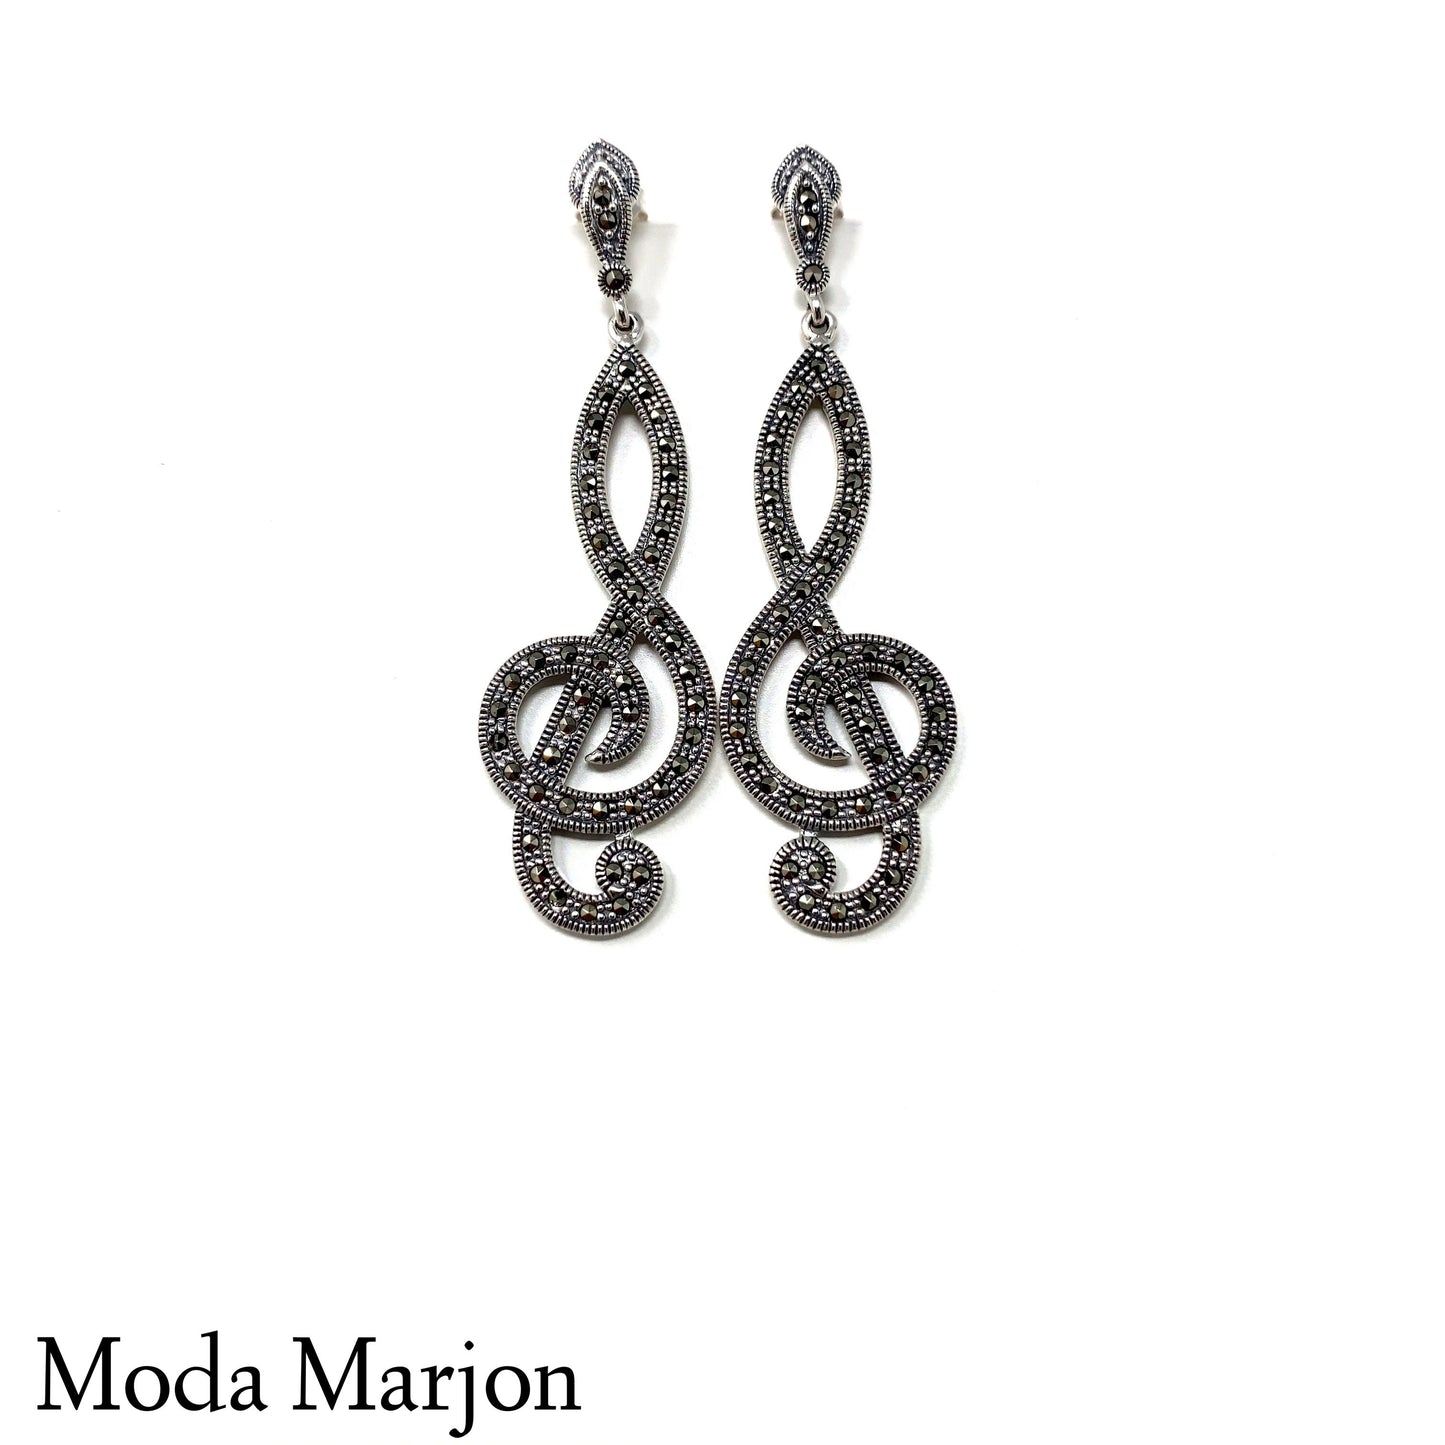 Moda Marjon  marcasite Drop earrings - Moda Marjon 